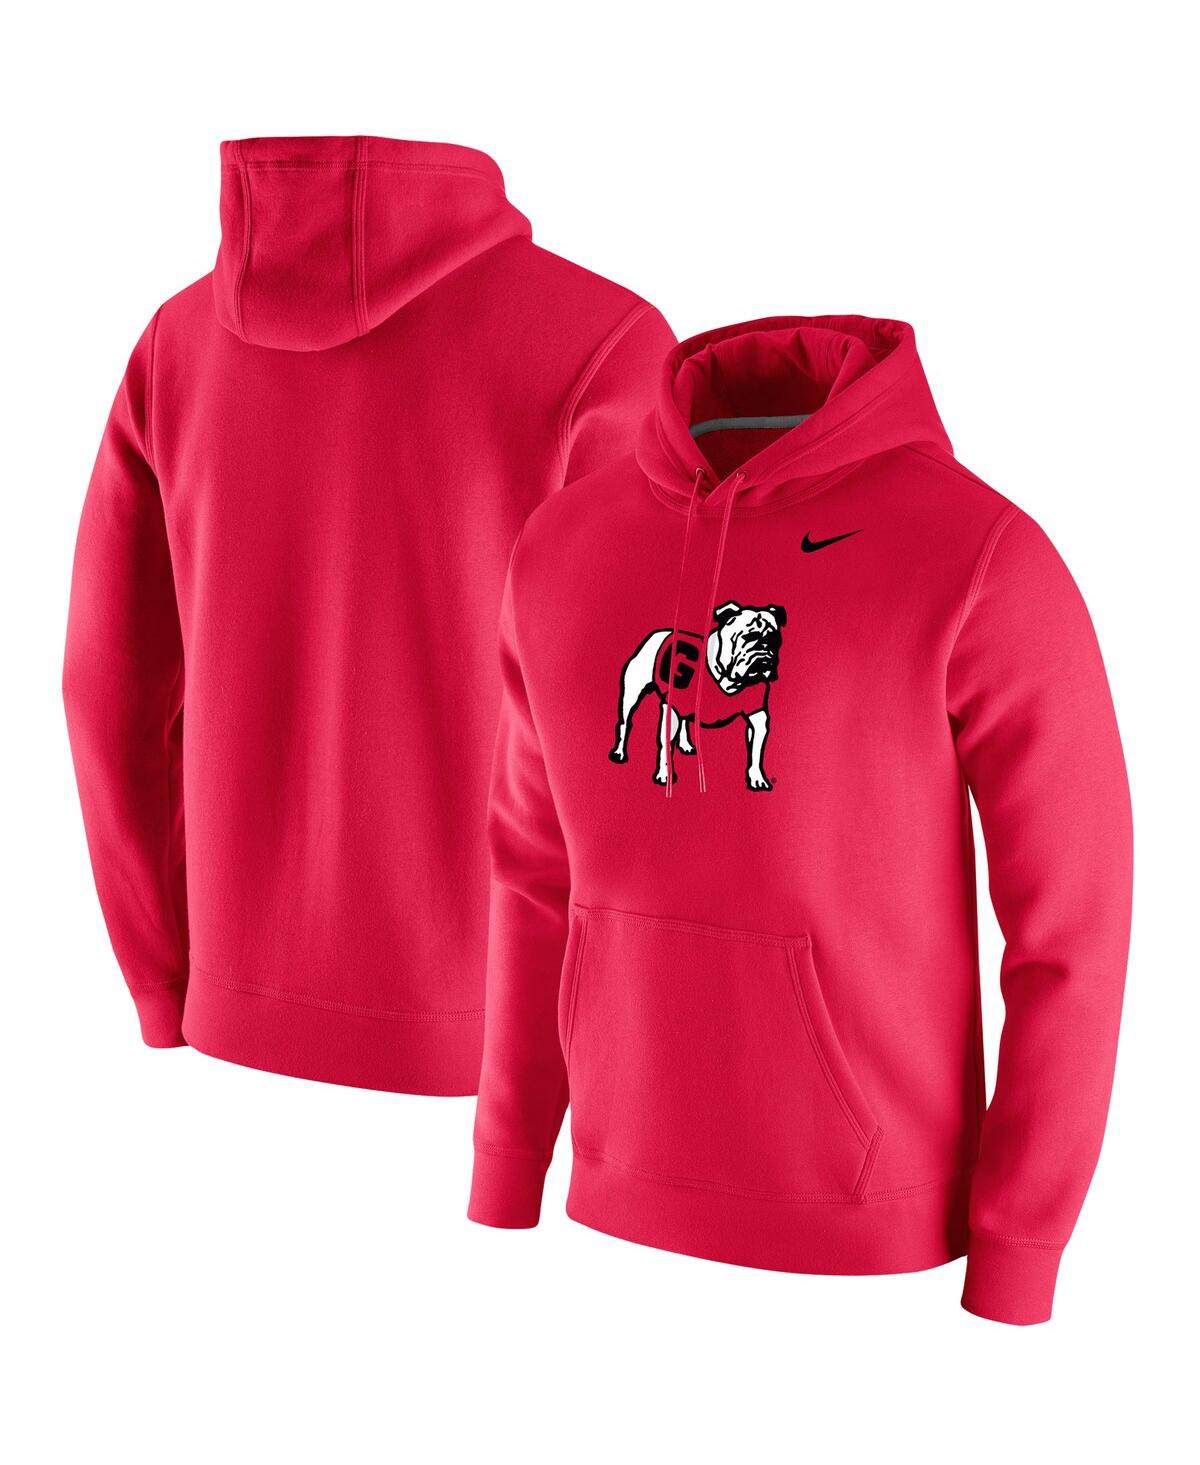 Shop Nike Men's  Red Georgia Bulldogs Vintage-like School Logo Pullover Hoodie